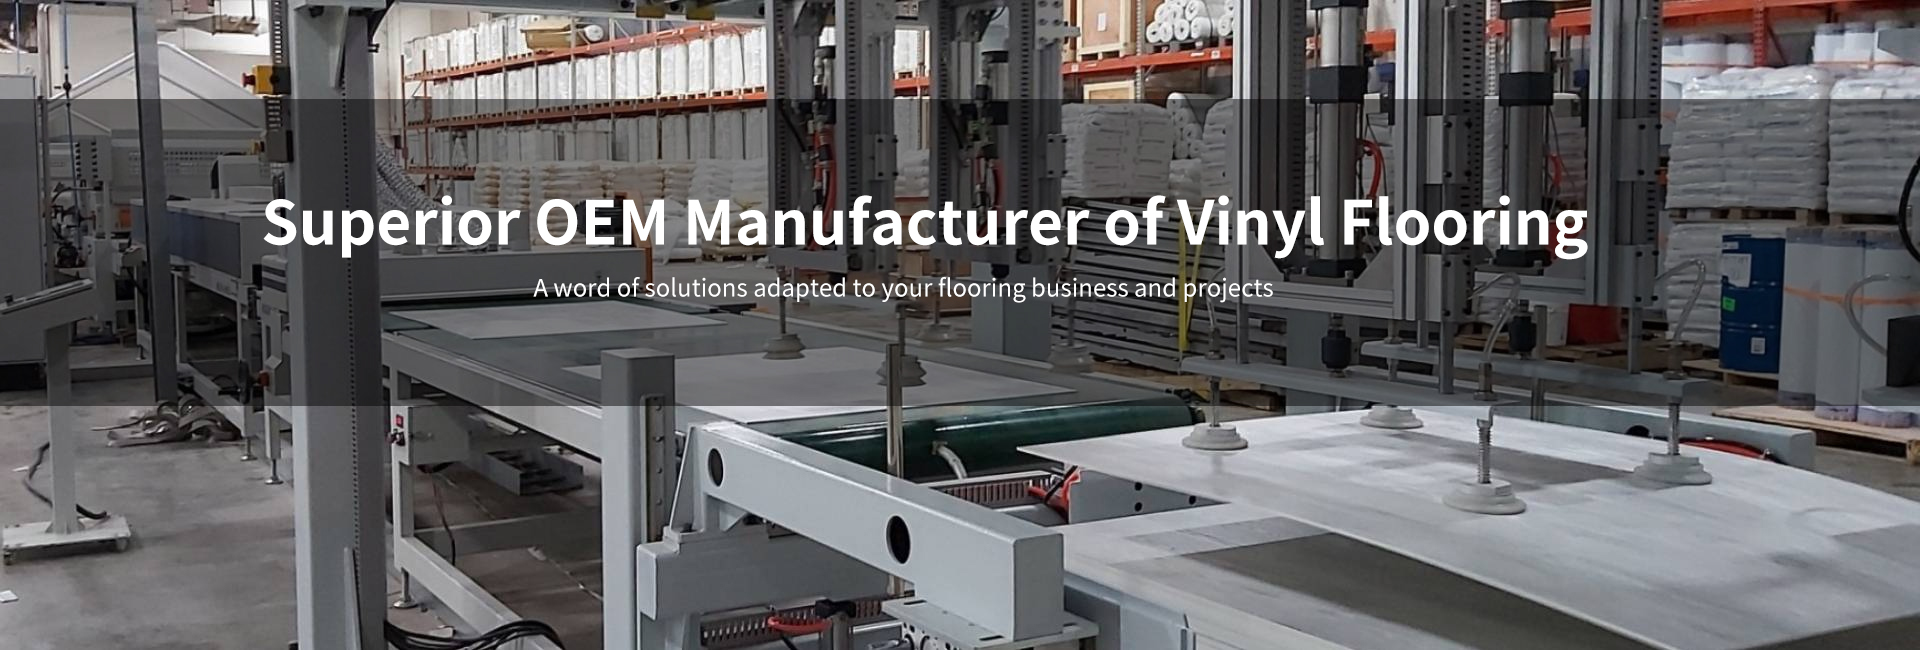 Superior OEM Manufacturer of Vinyl Flooring